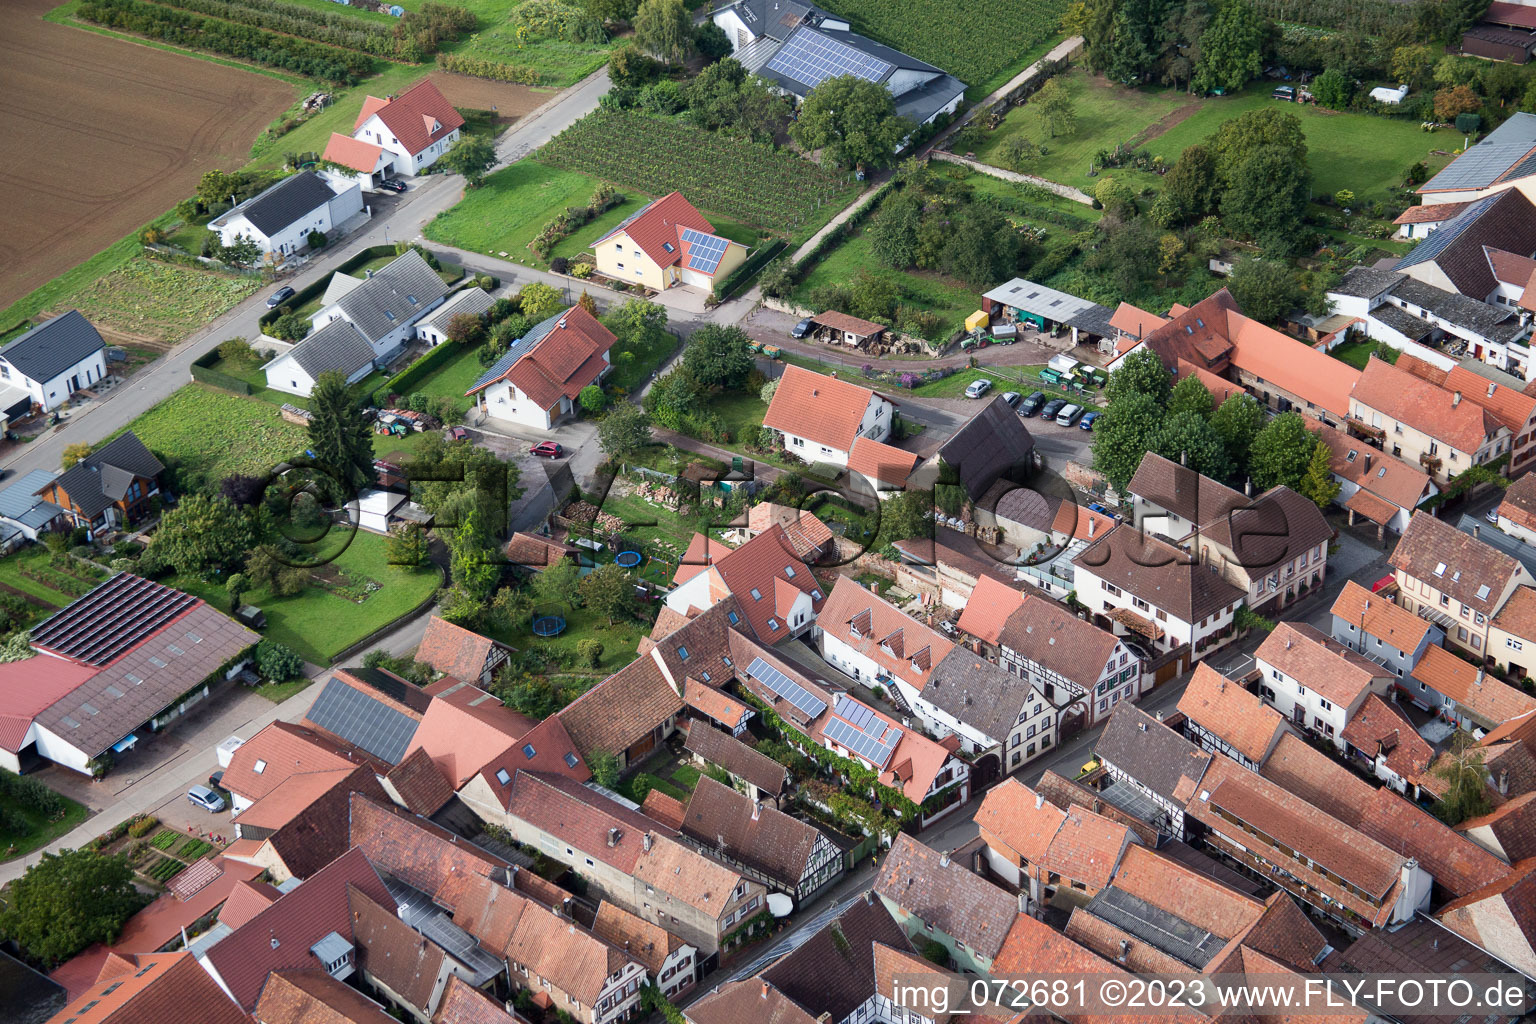 District Heuchelheim in Heuchelheim-Klingen in the state Rhineland-Palatinate, Germany seen from above